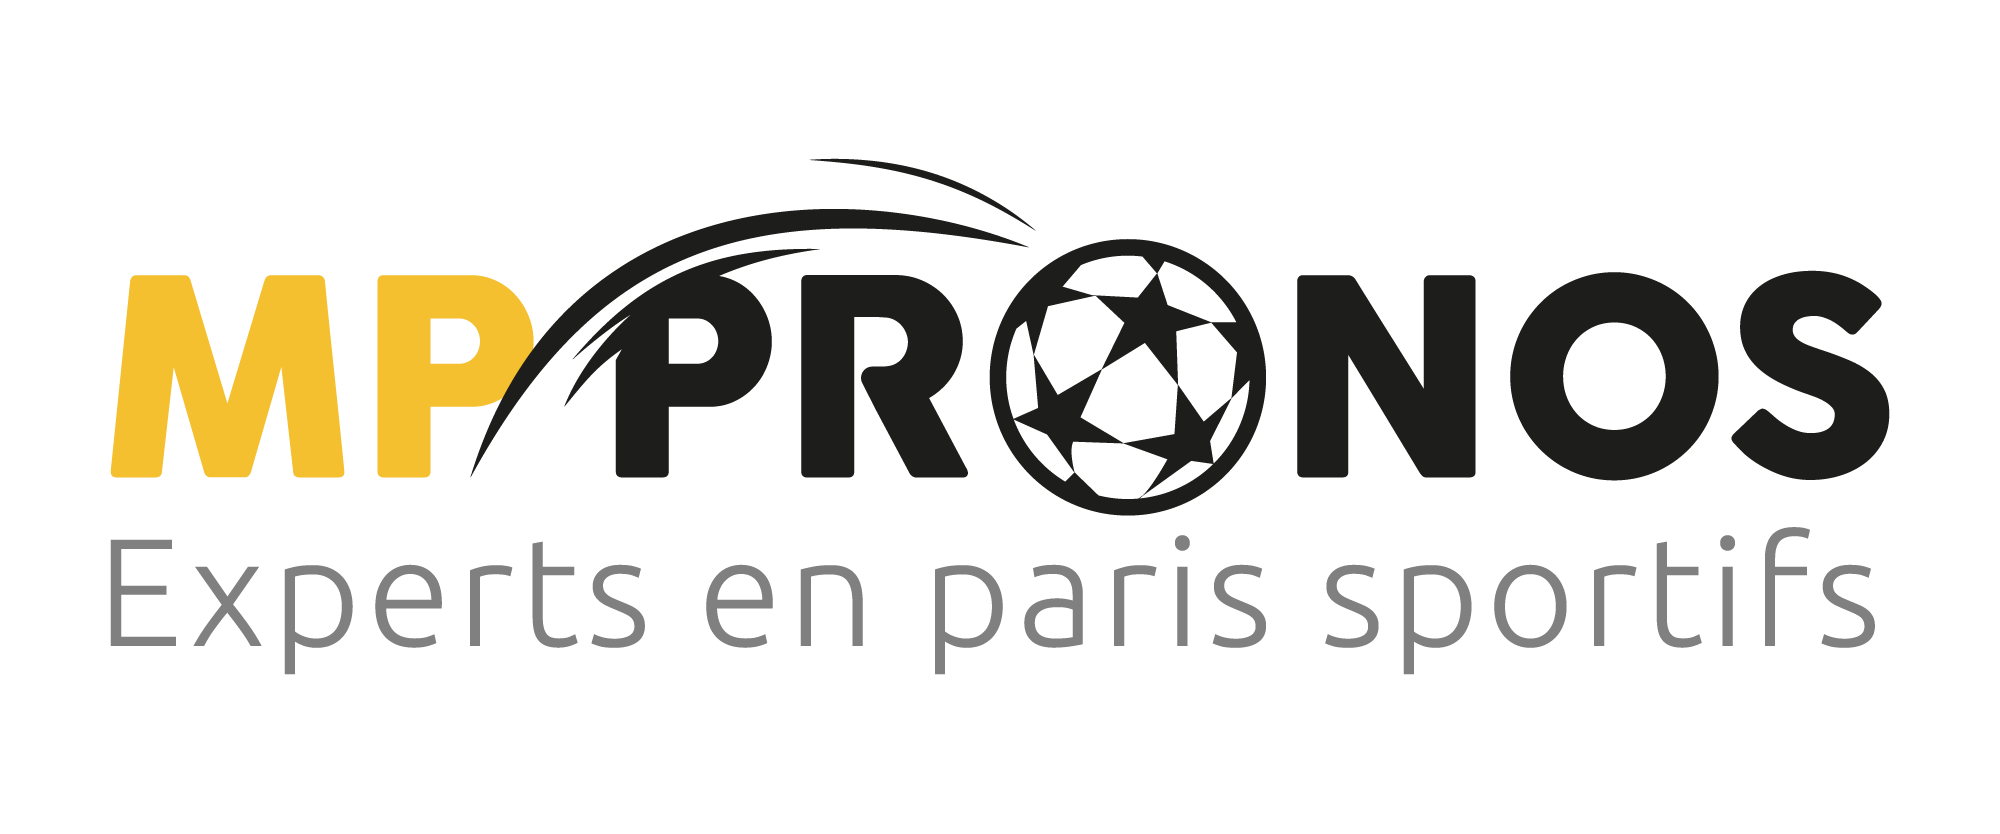 MP Pronos - Experts en paris sportifs